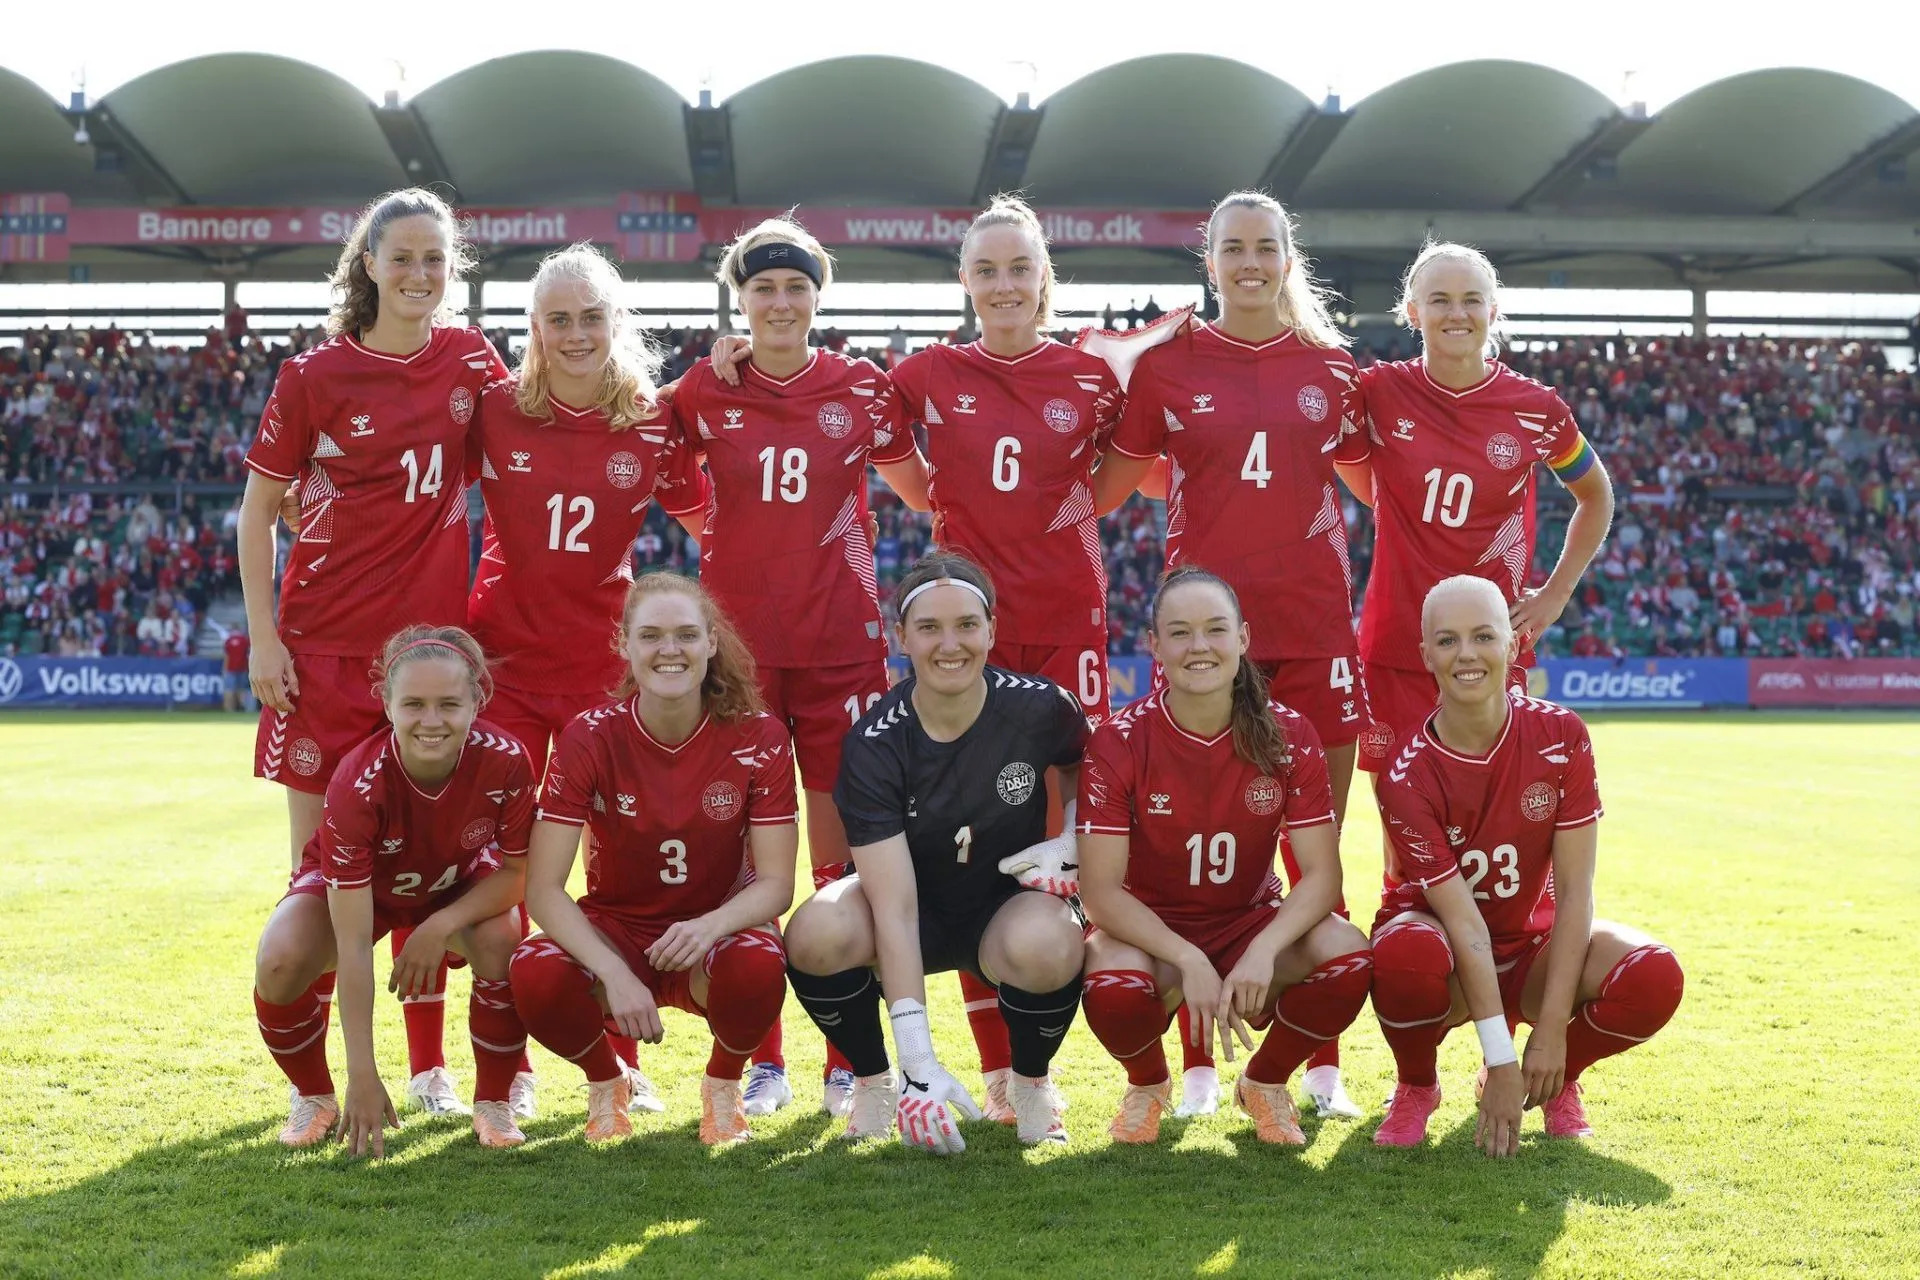 Sélection : Accord historique pour l'équipe nationale de Danemark